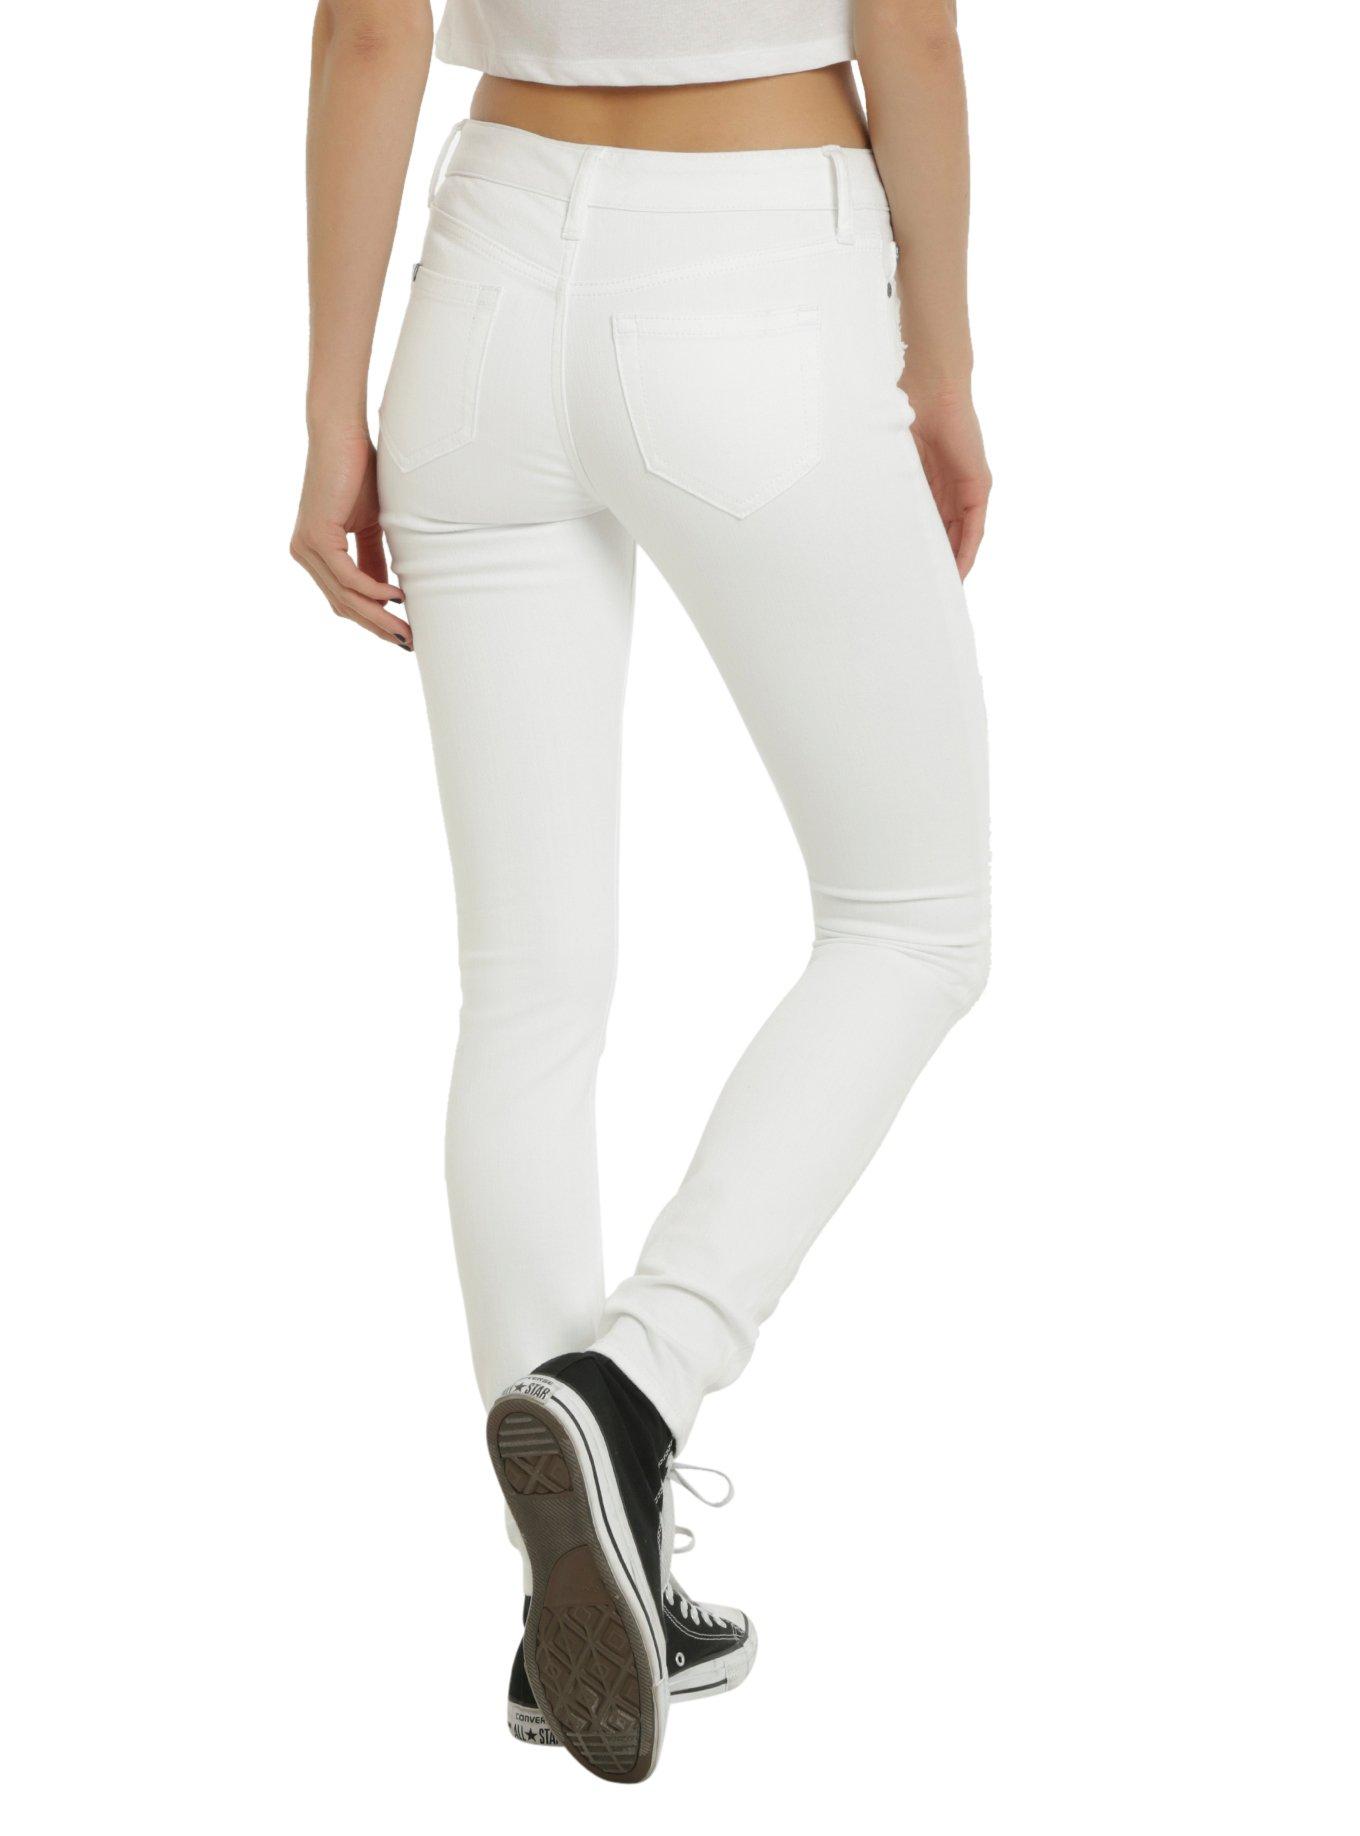 Blackheart White Deconstructed Skinny Jeans, , alternate